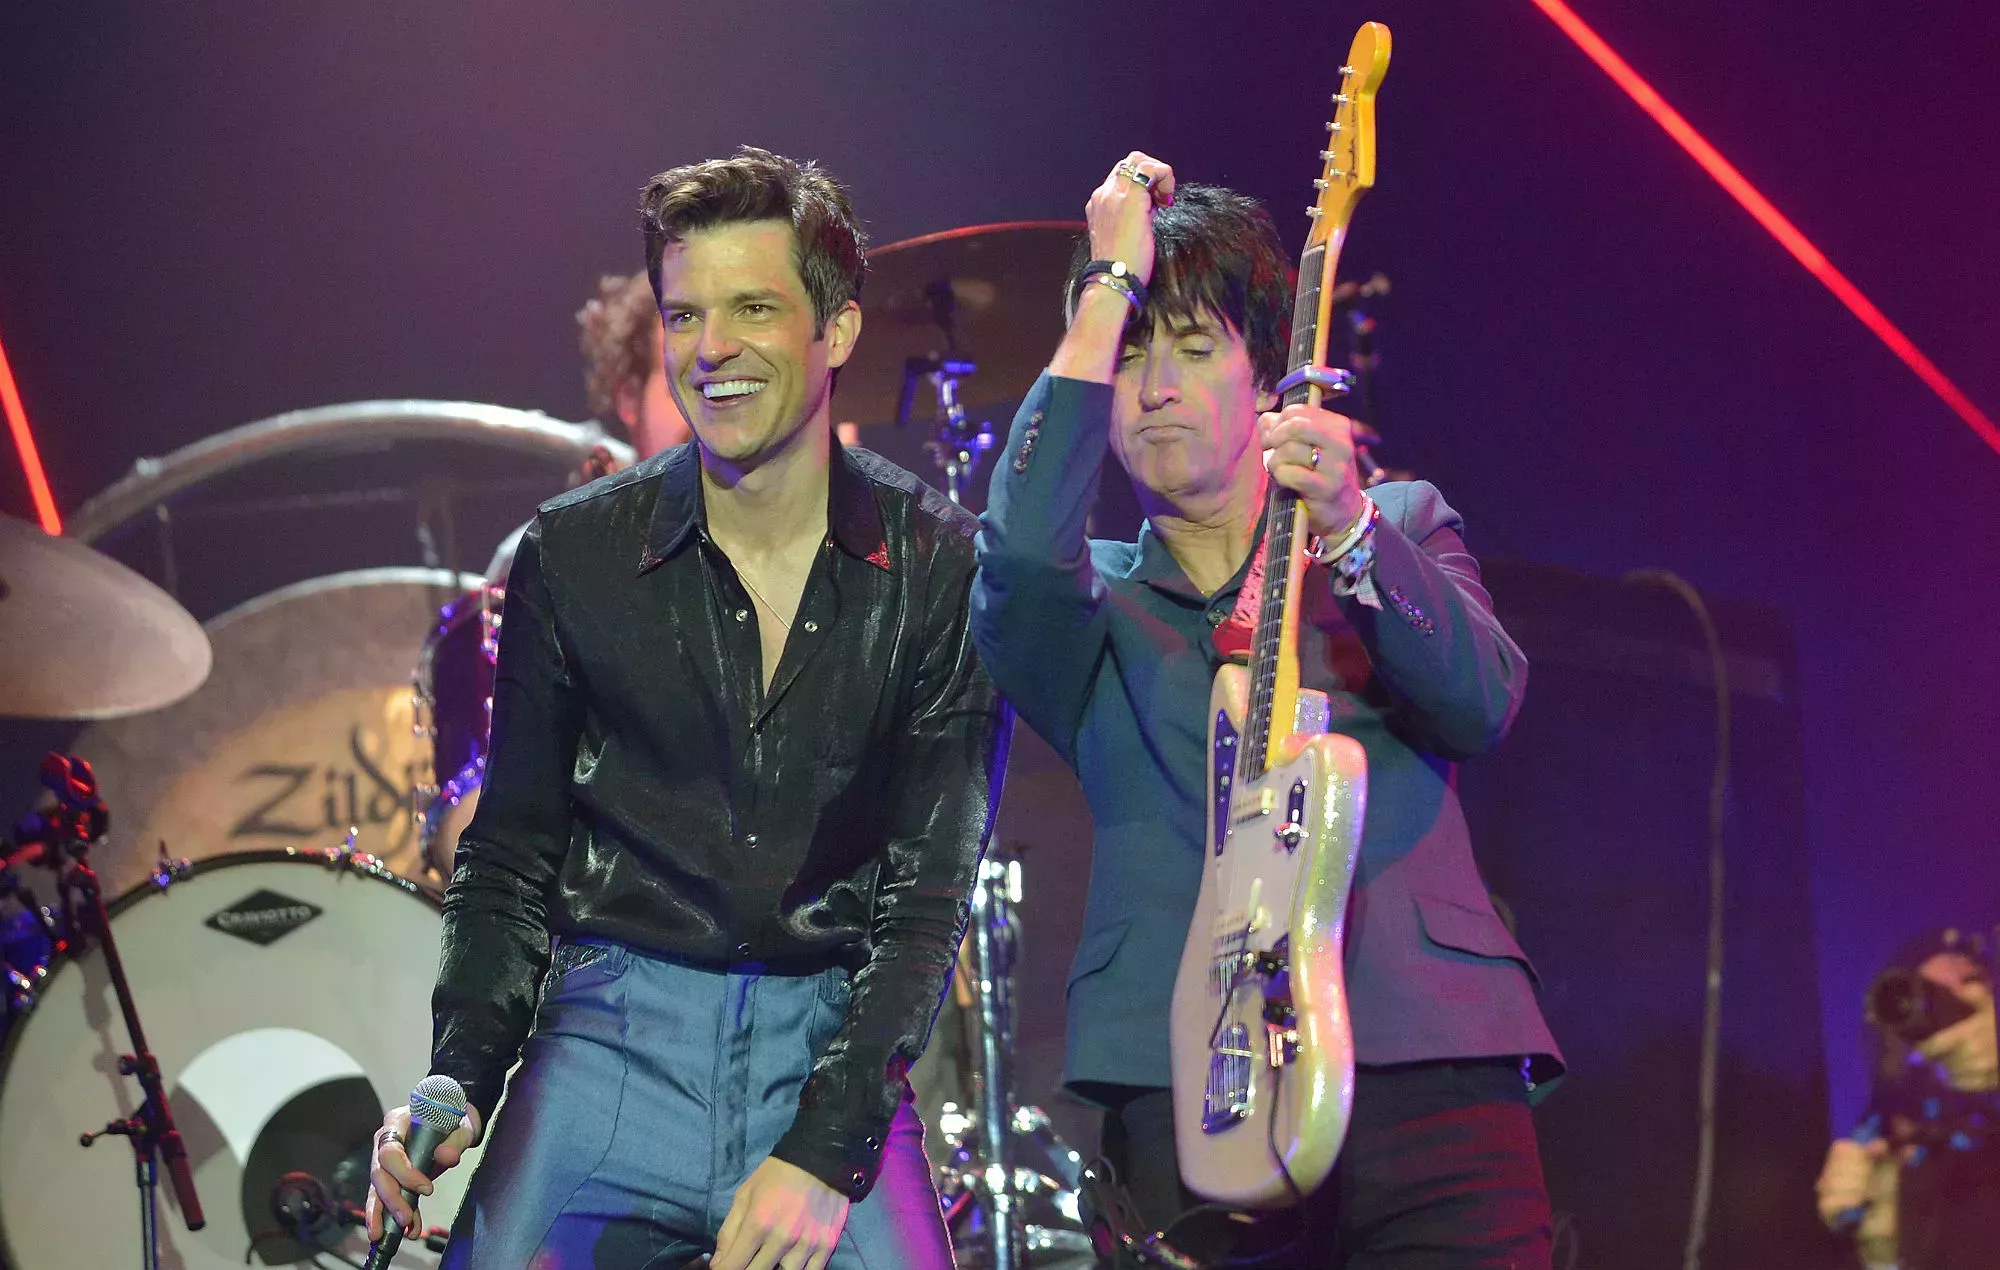 Mira cómo Johnny Marr se une a The Killers en el escenario en el inicio de su gira por Estados Unidos